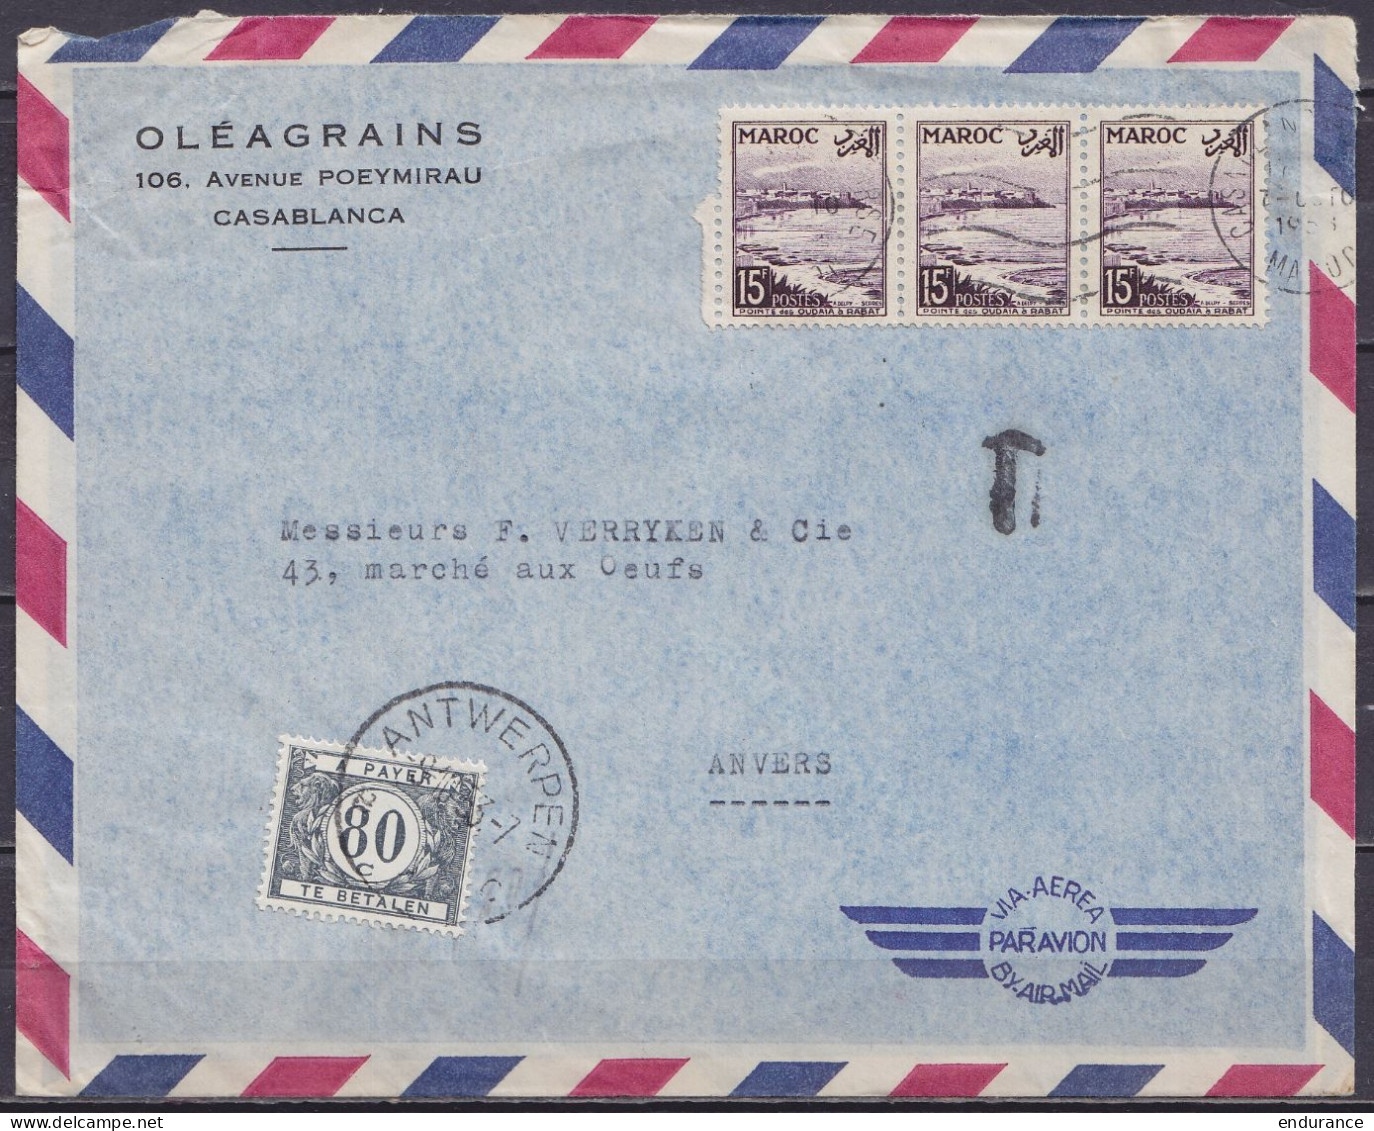 Maroc - Env. "Oléagrains" Par Avion Affr. 3x15f Flam. CASABLANCA /7 OCTO 1933 Pour ANVERS Taxée 80c Càd ANTWERPEN /9.10. - Covers & Documents